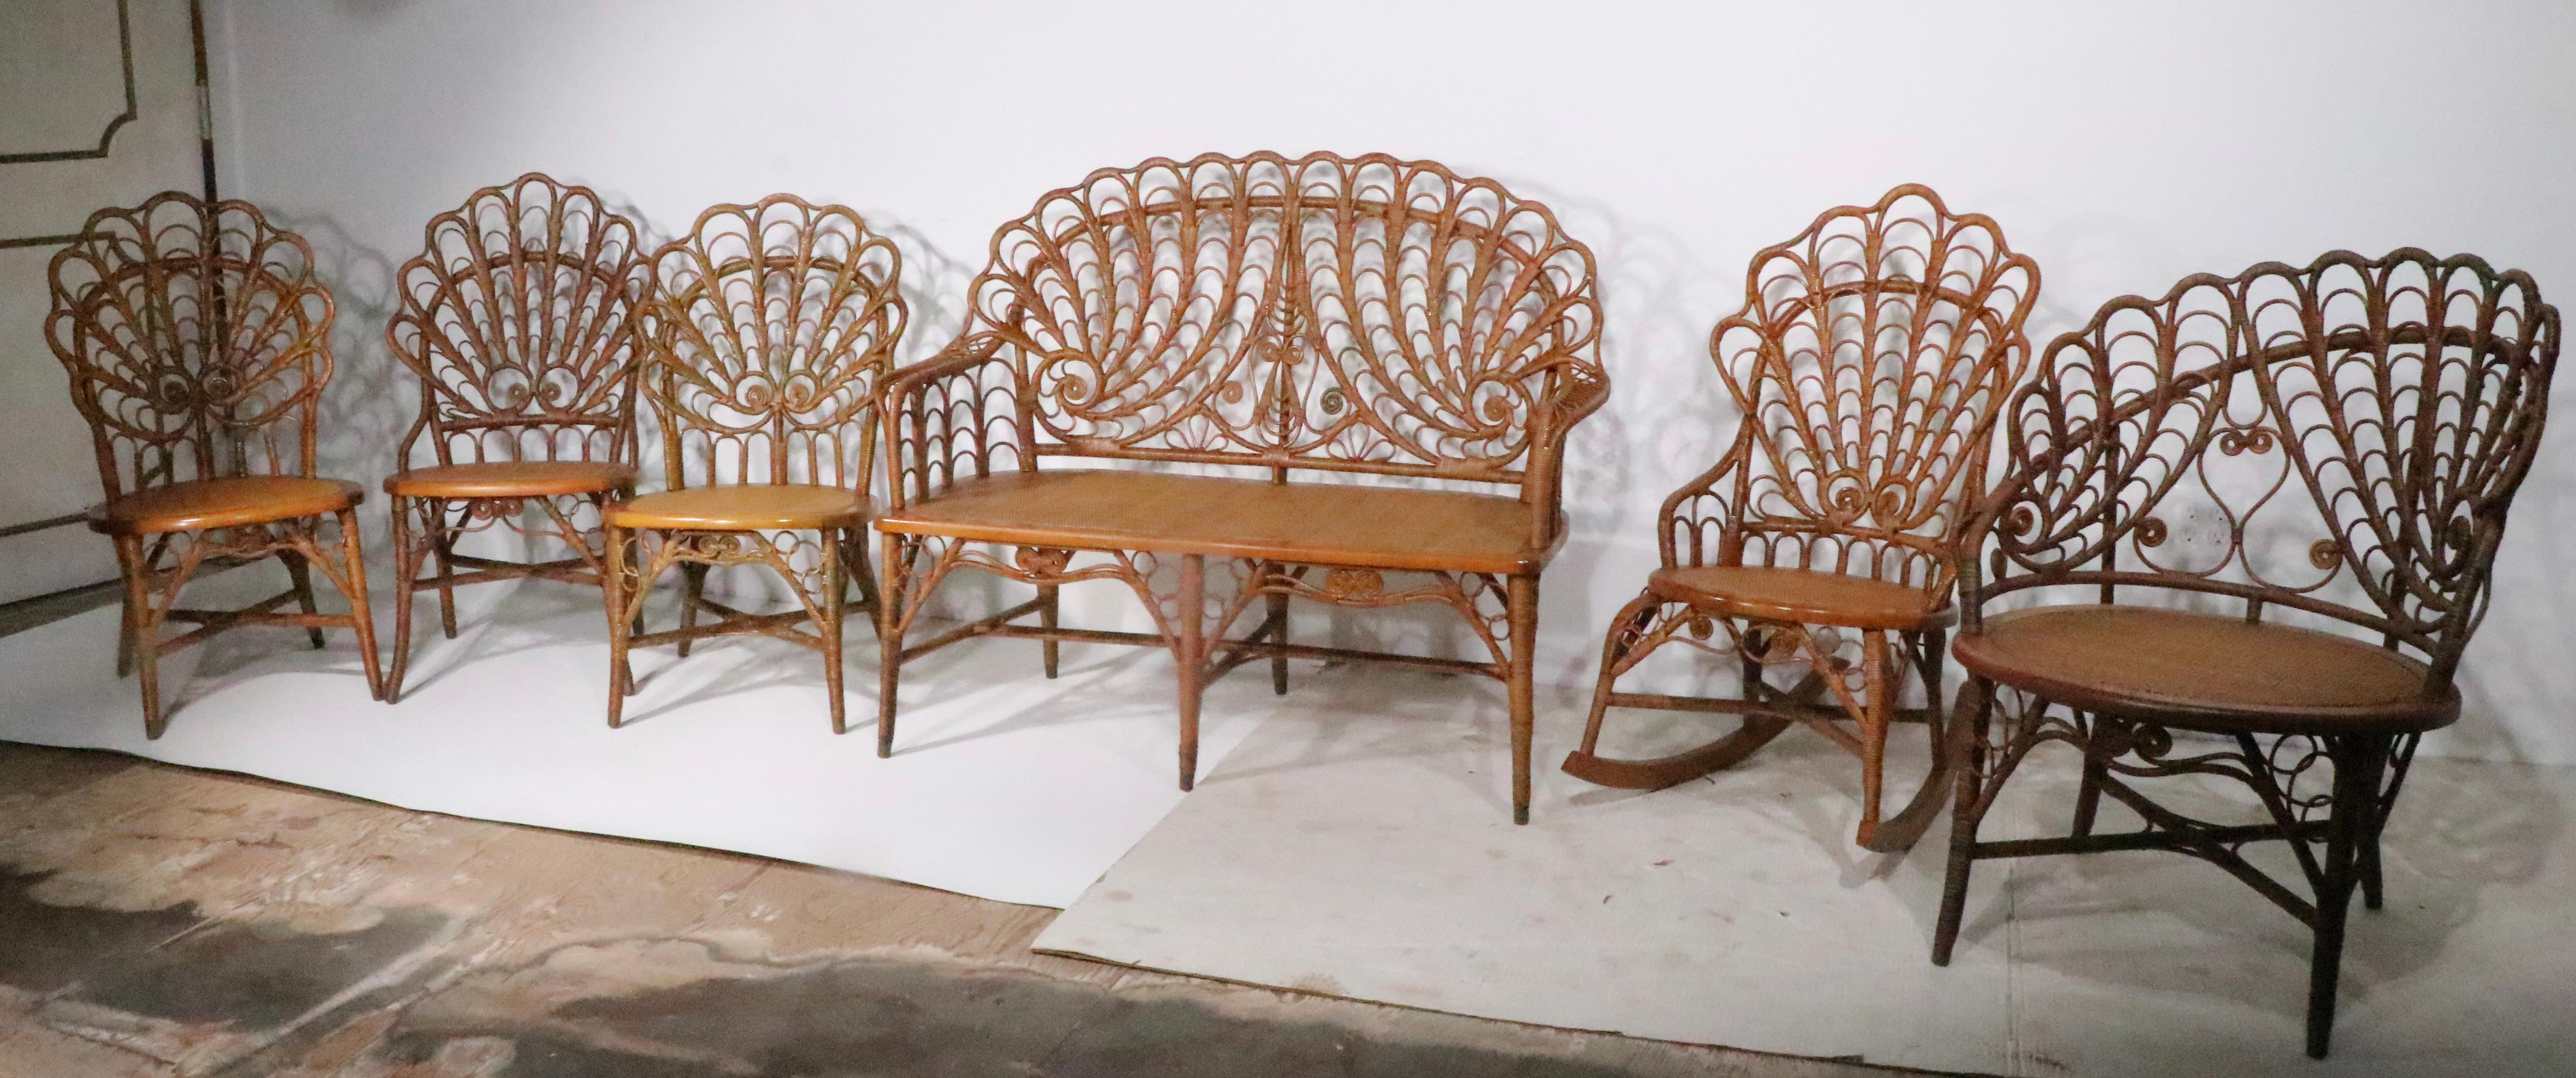 Incroyable ensemble de six pièces en osier antique  pièces de Heywood Brothers, vers 1890. Cet ensemble rare se compose de trois chaises d'appoint, d'un rocking-chair, d'une chaise longue et d'un canapé-lit. L'ensemble est dans un état d'origine